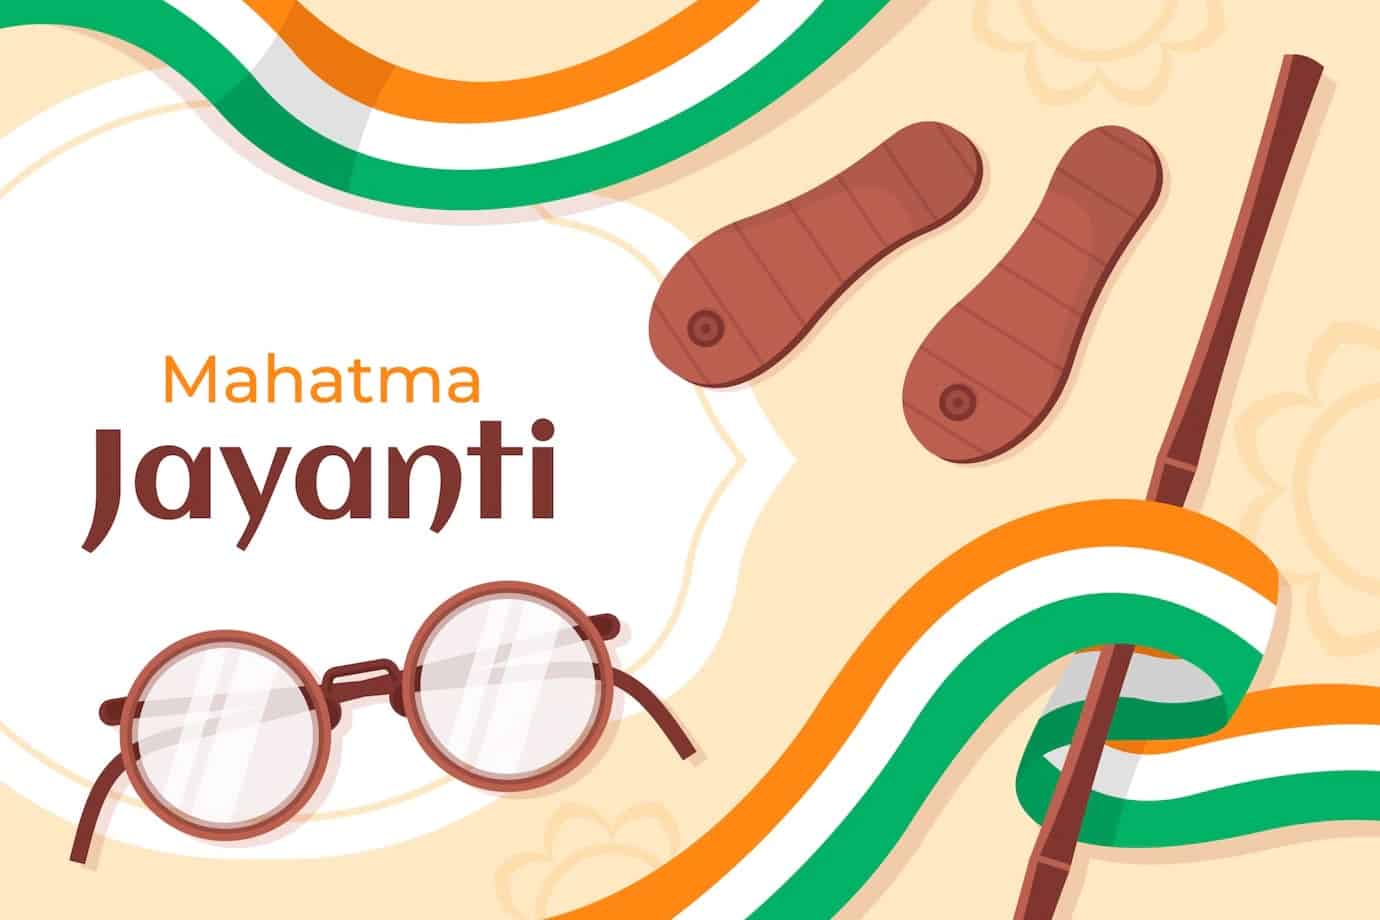 Happy Gandhi Jayanti Images